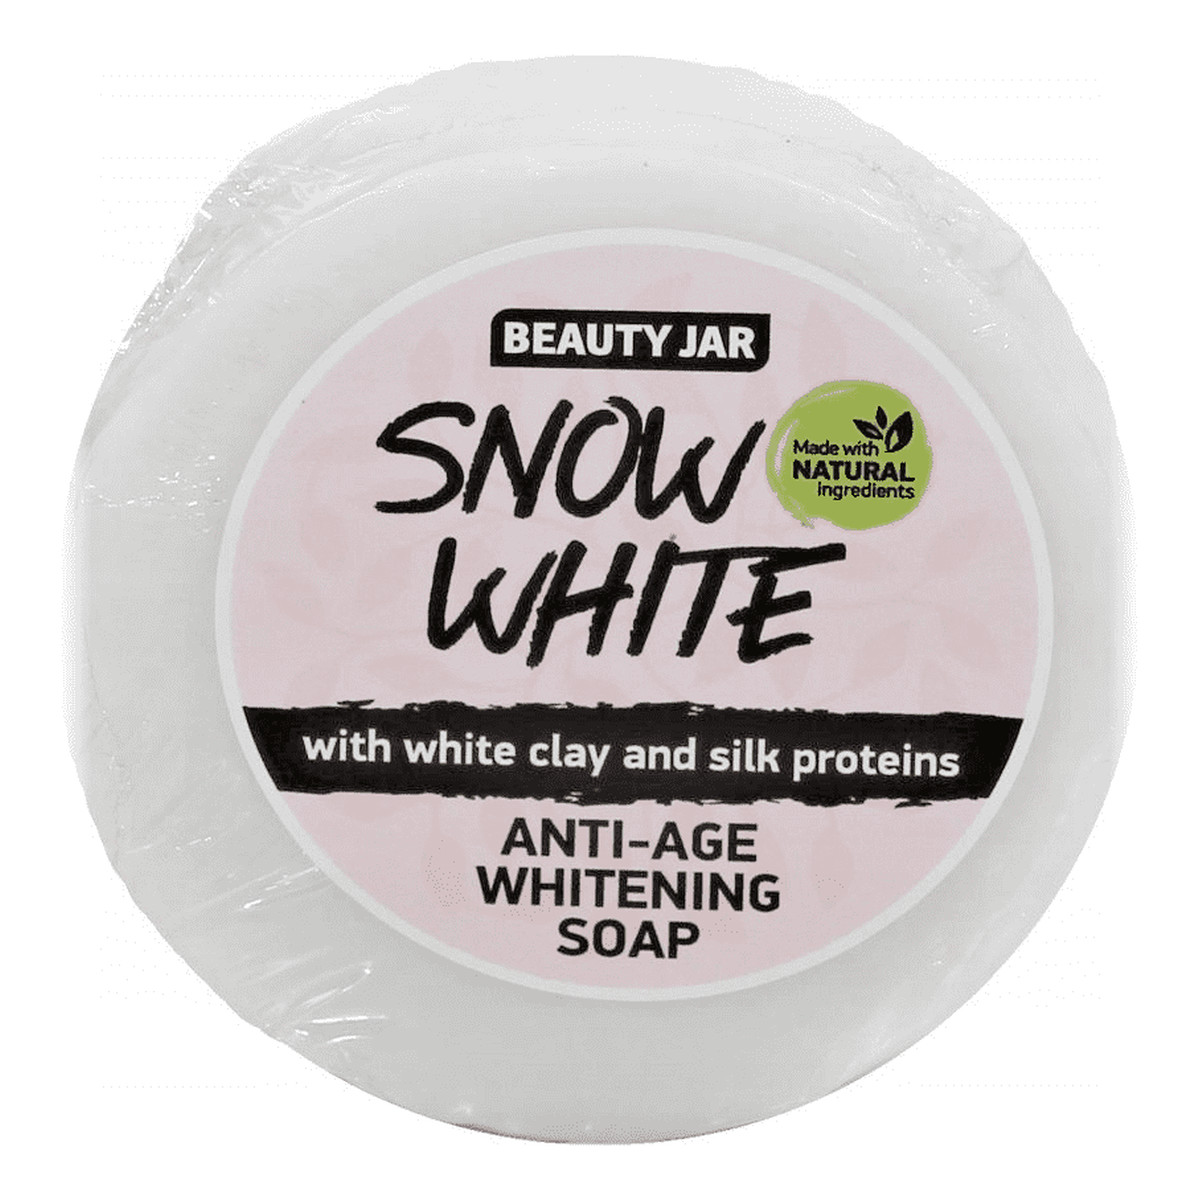 Beauty Jar SNOW WHITE Mydło wybielające anty-age z białą glinką i proteinami jedwabiu 80g